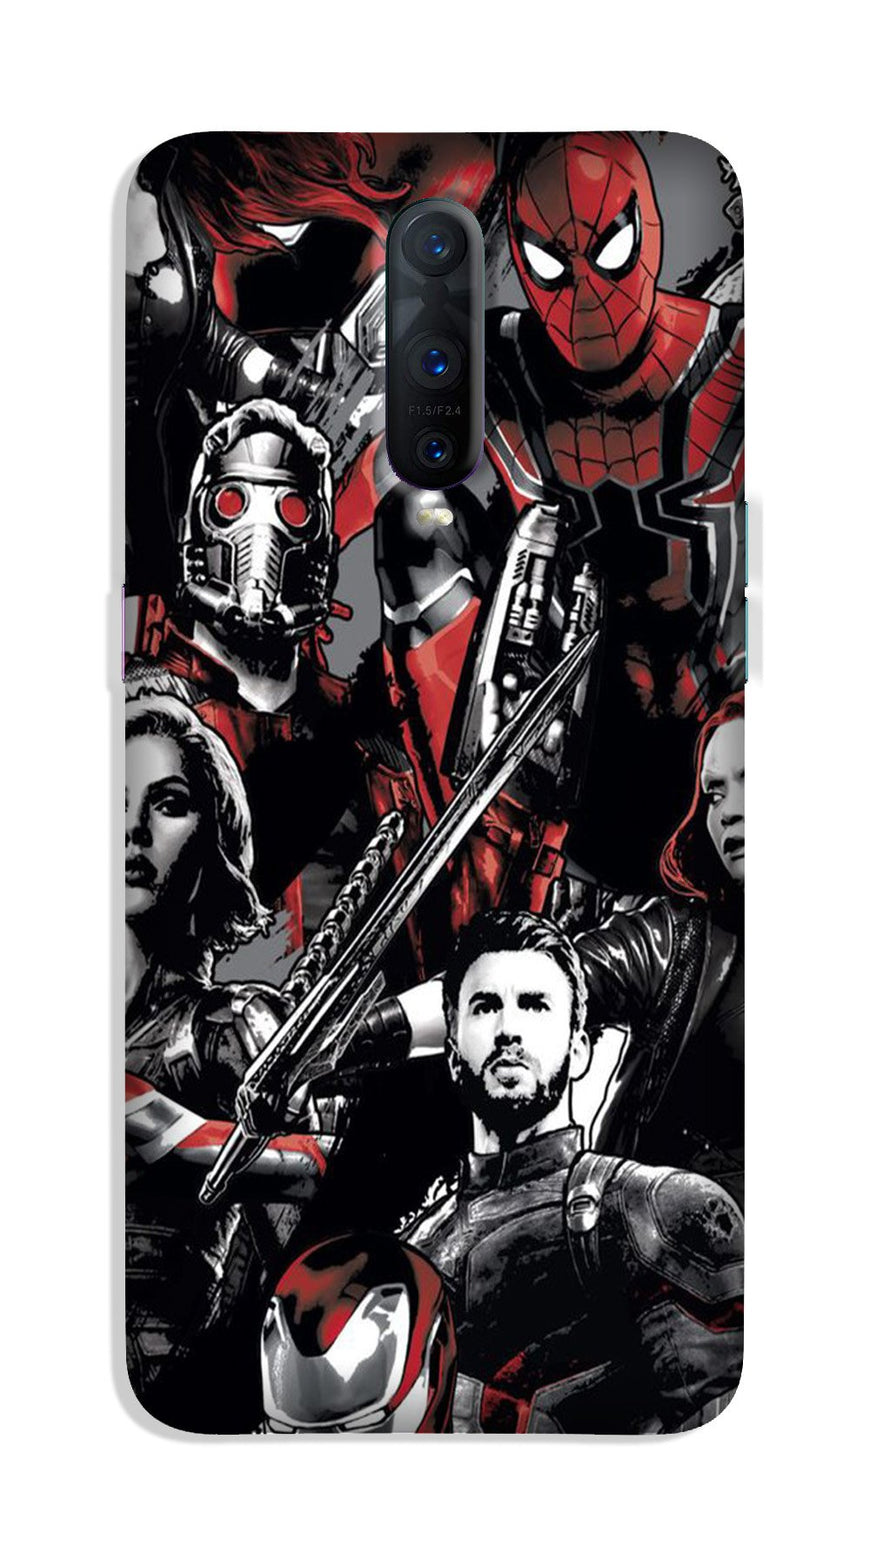 Avengers Case for OnePlus 7 Pro (Design - 190)